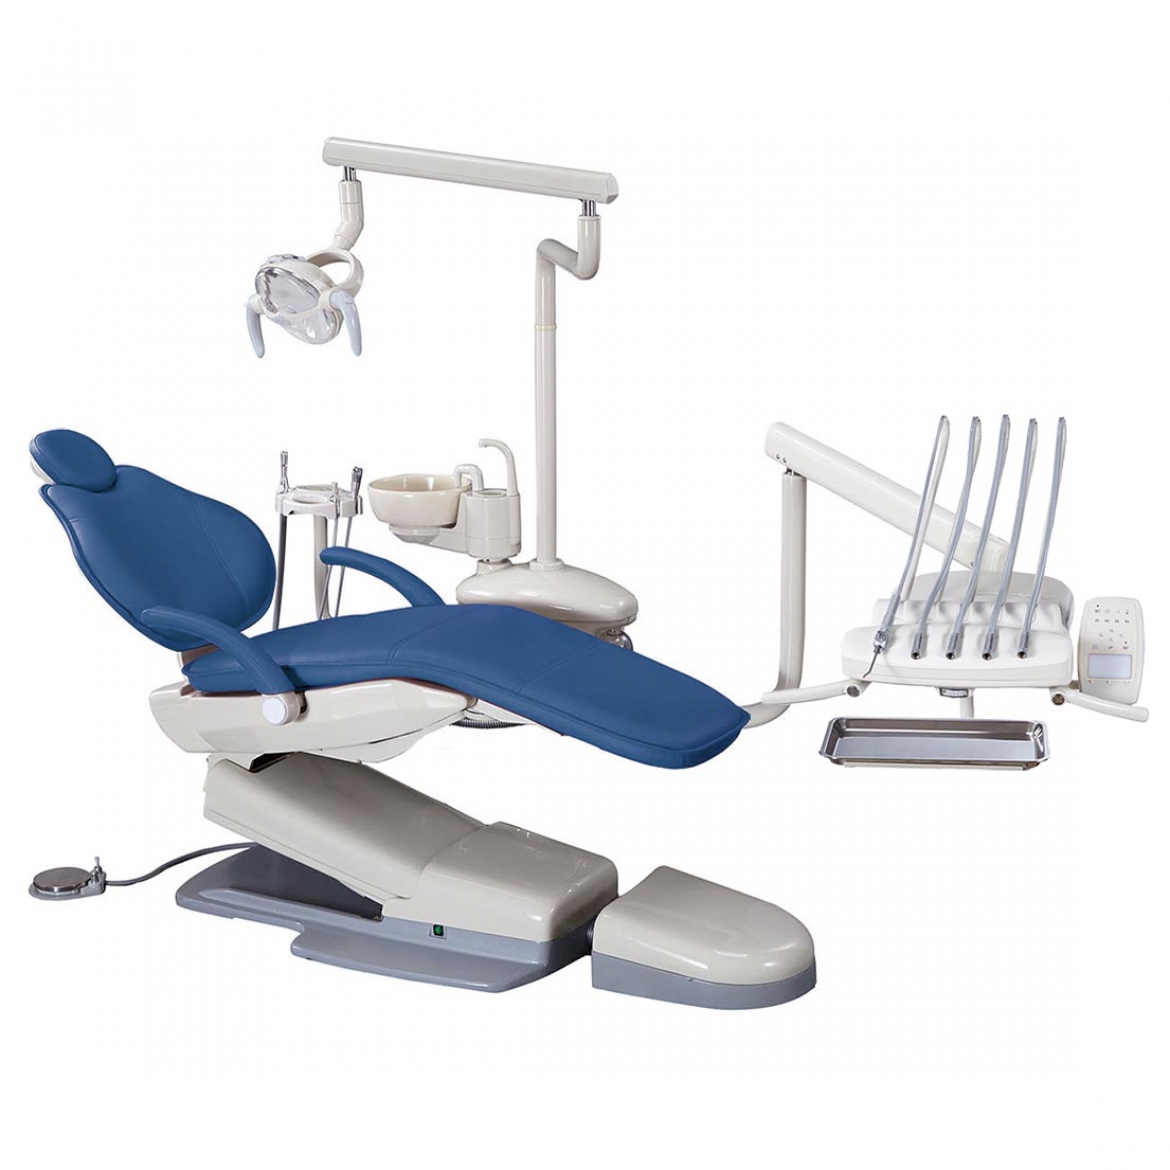 Стоматологическая установка SL-8500